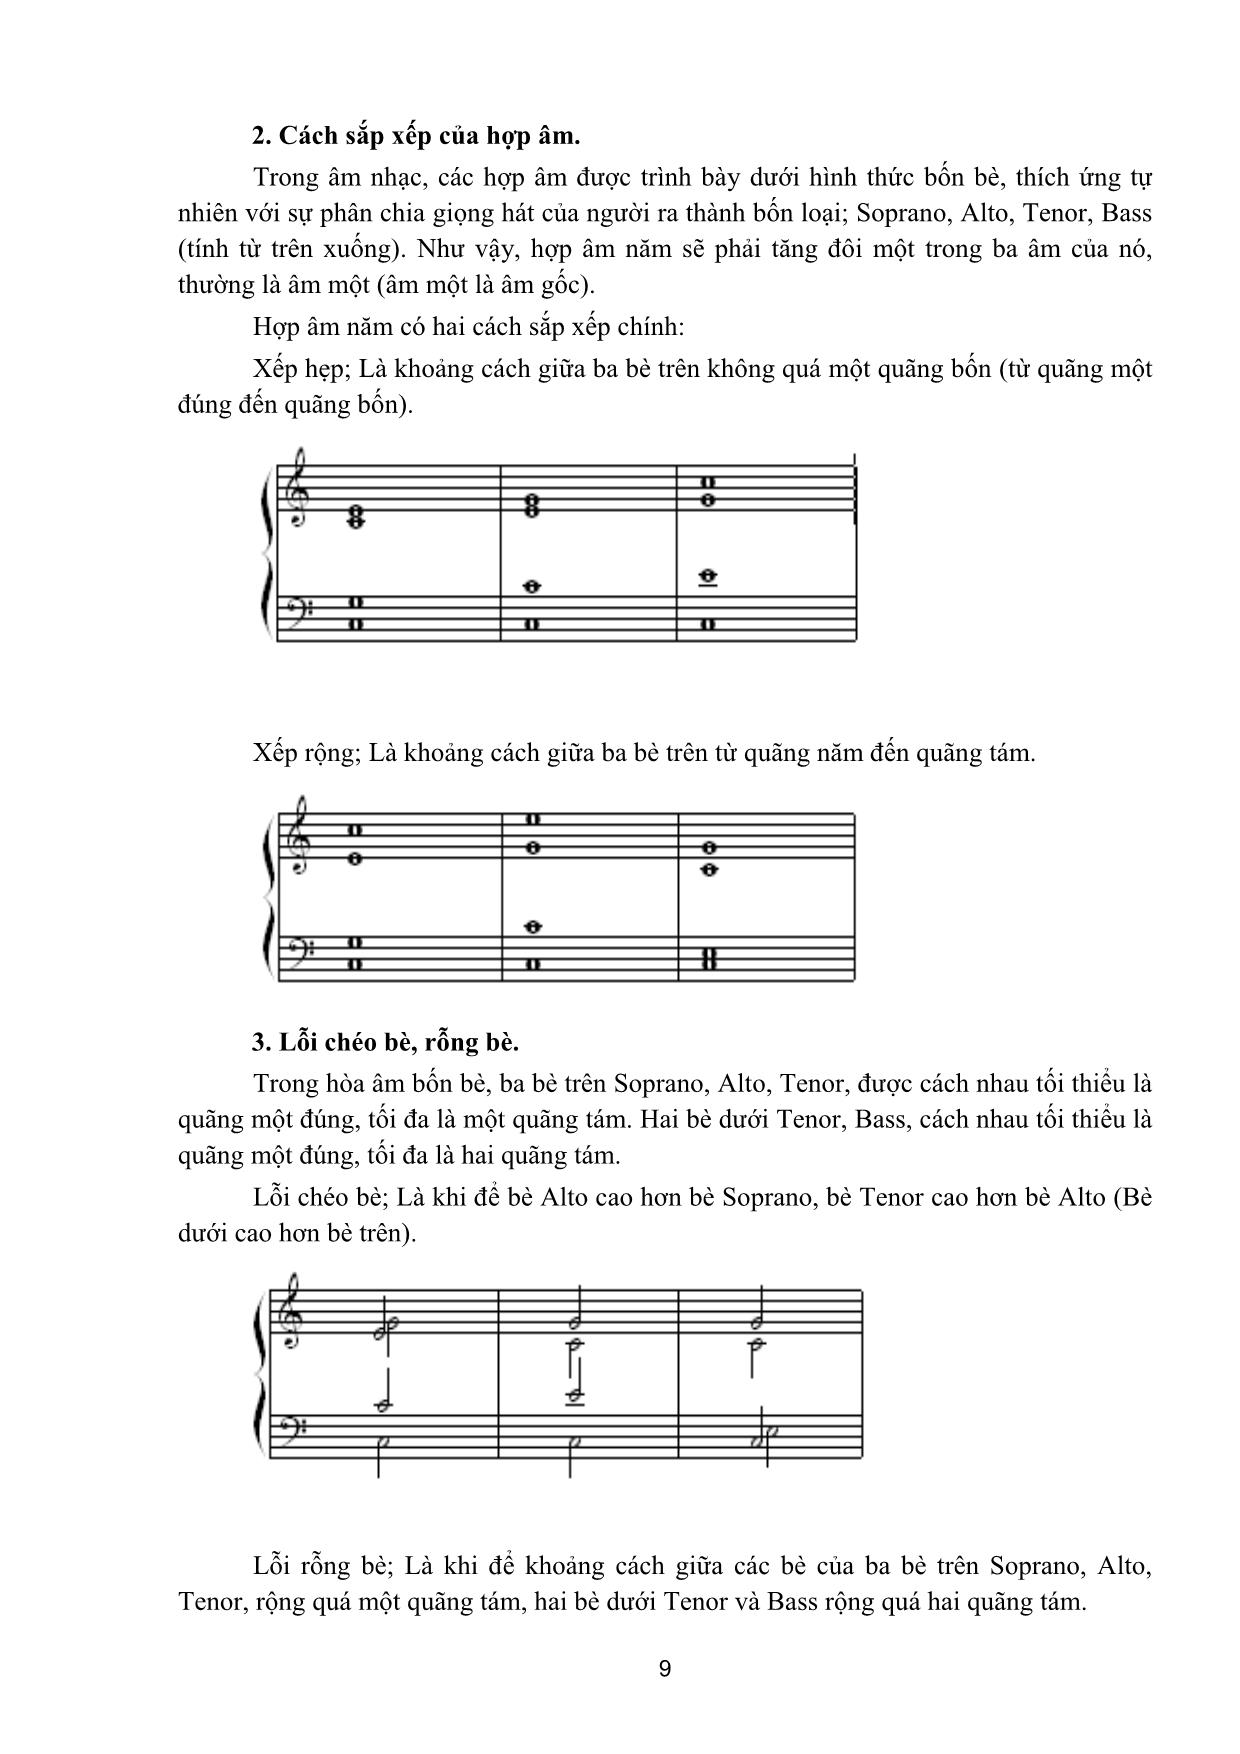 Giáo trình Thanh nhạc, organ, biểu diễn nhạc cụ truyền thống - Hòa thanh trang 9